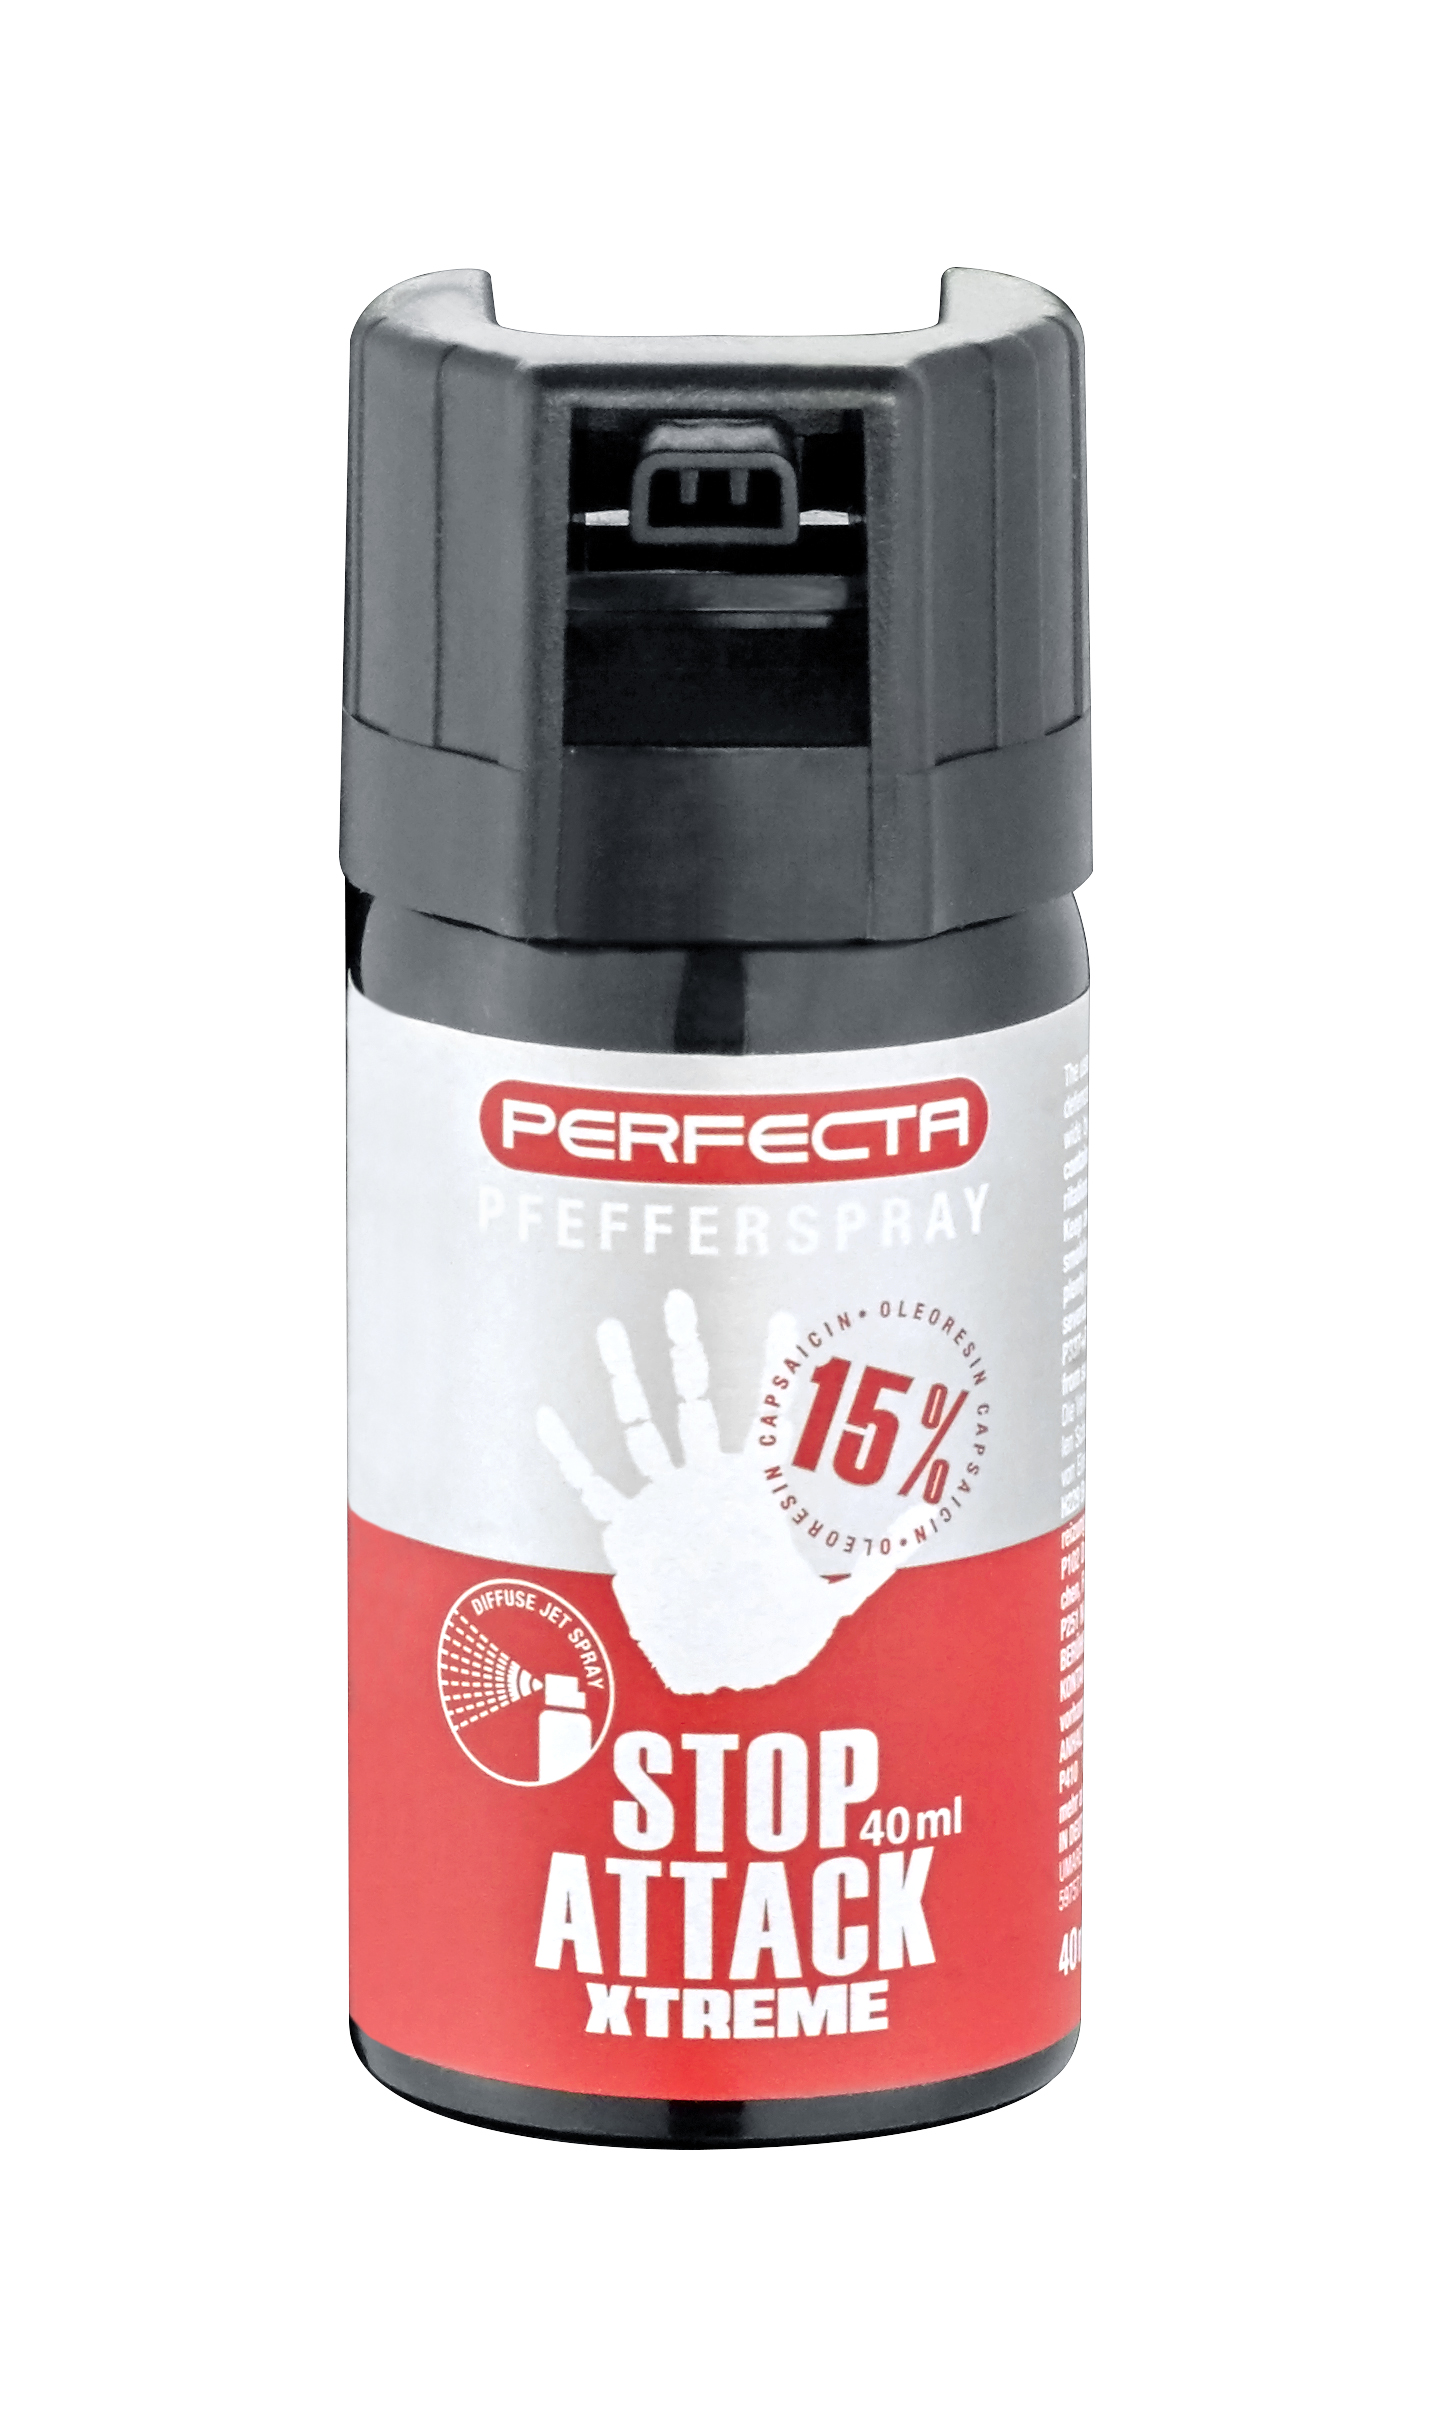 Perfecta Stop Attack Xtreme Pfefferspray mit konischem Strahl, Flasche 40ml